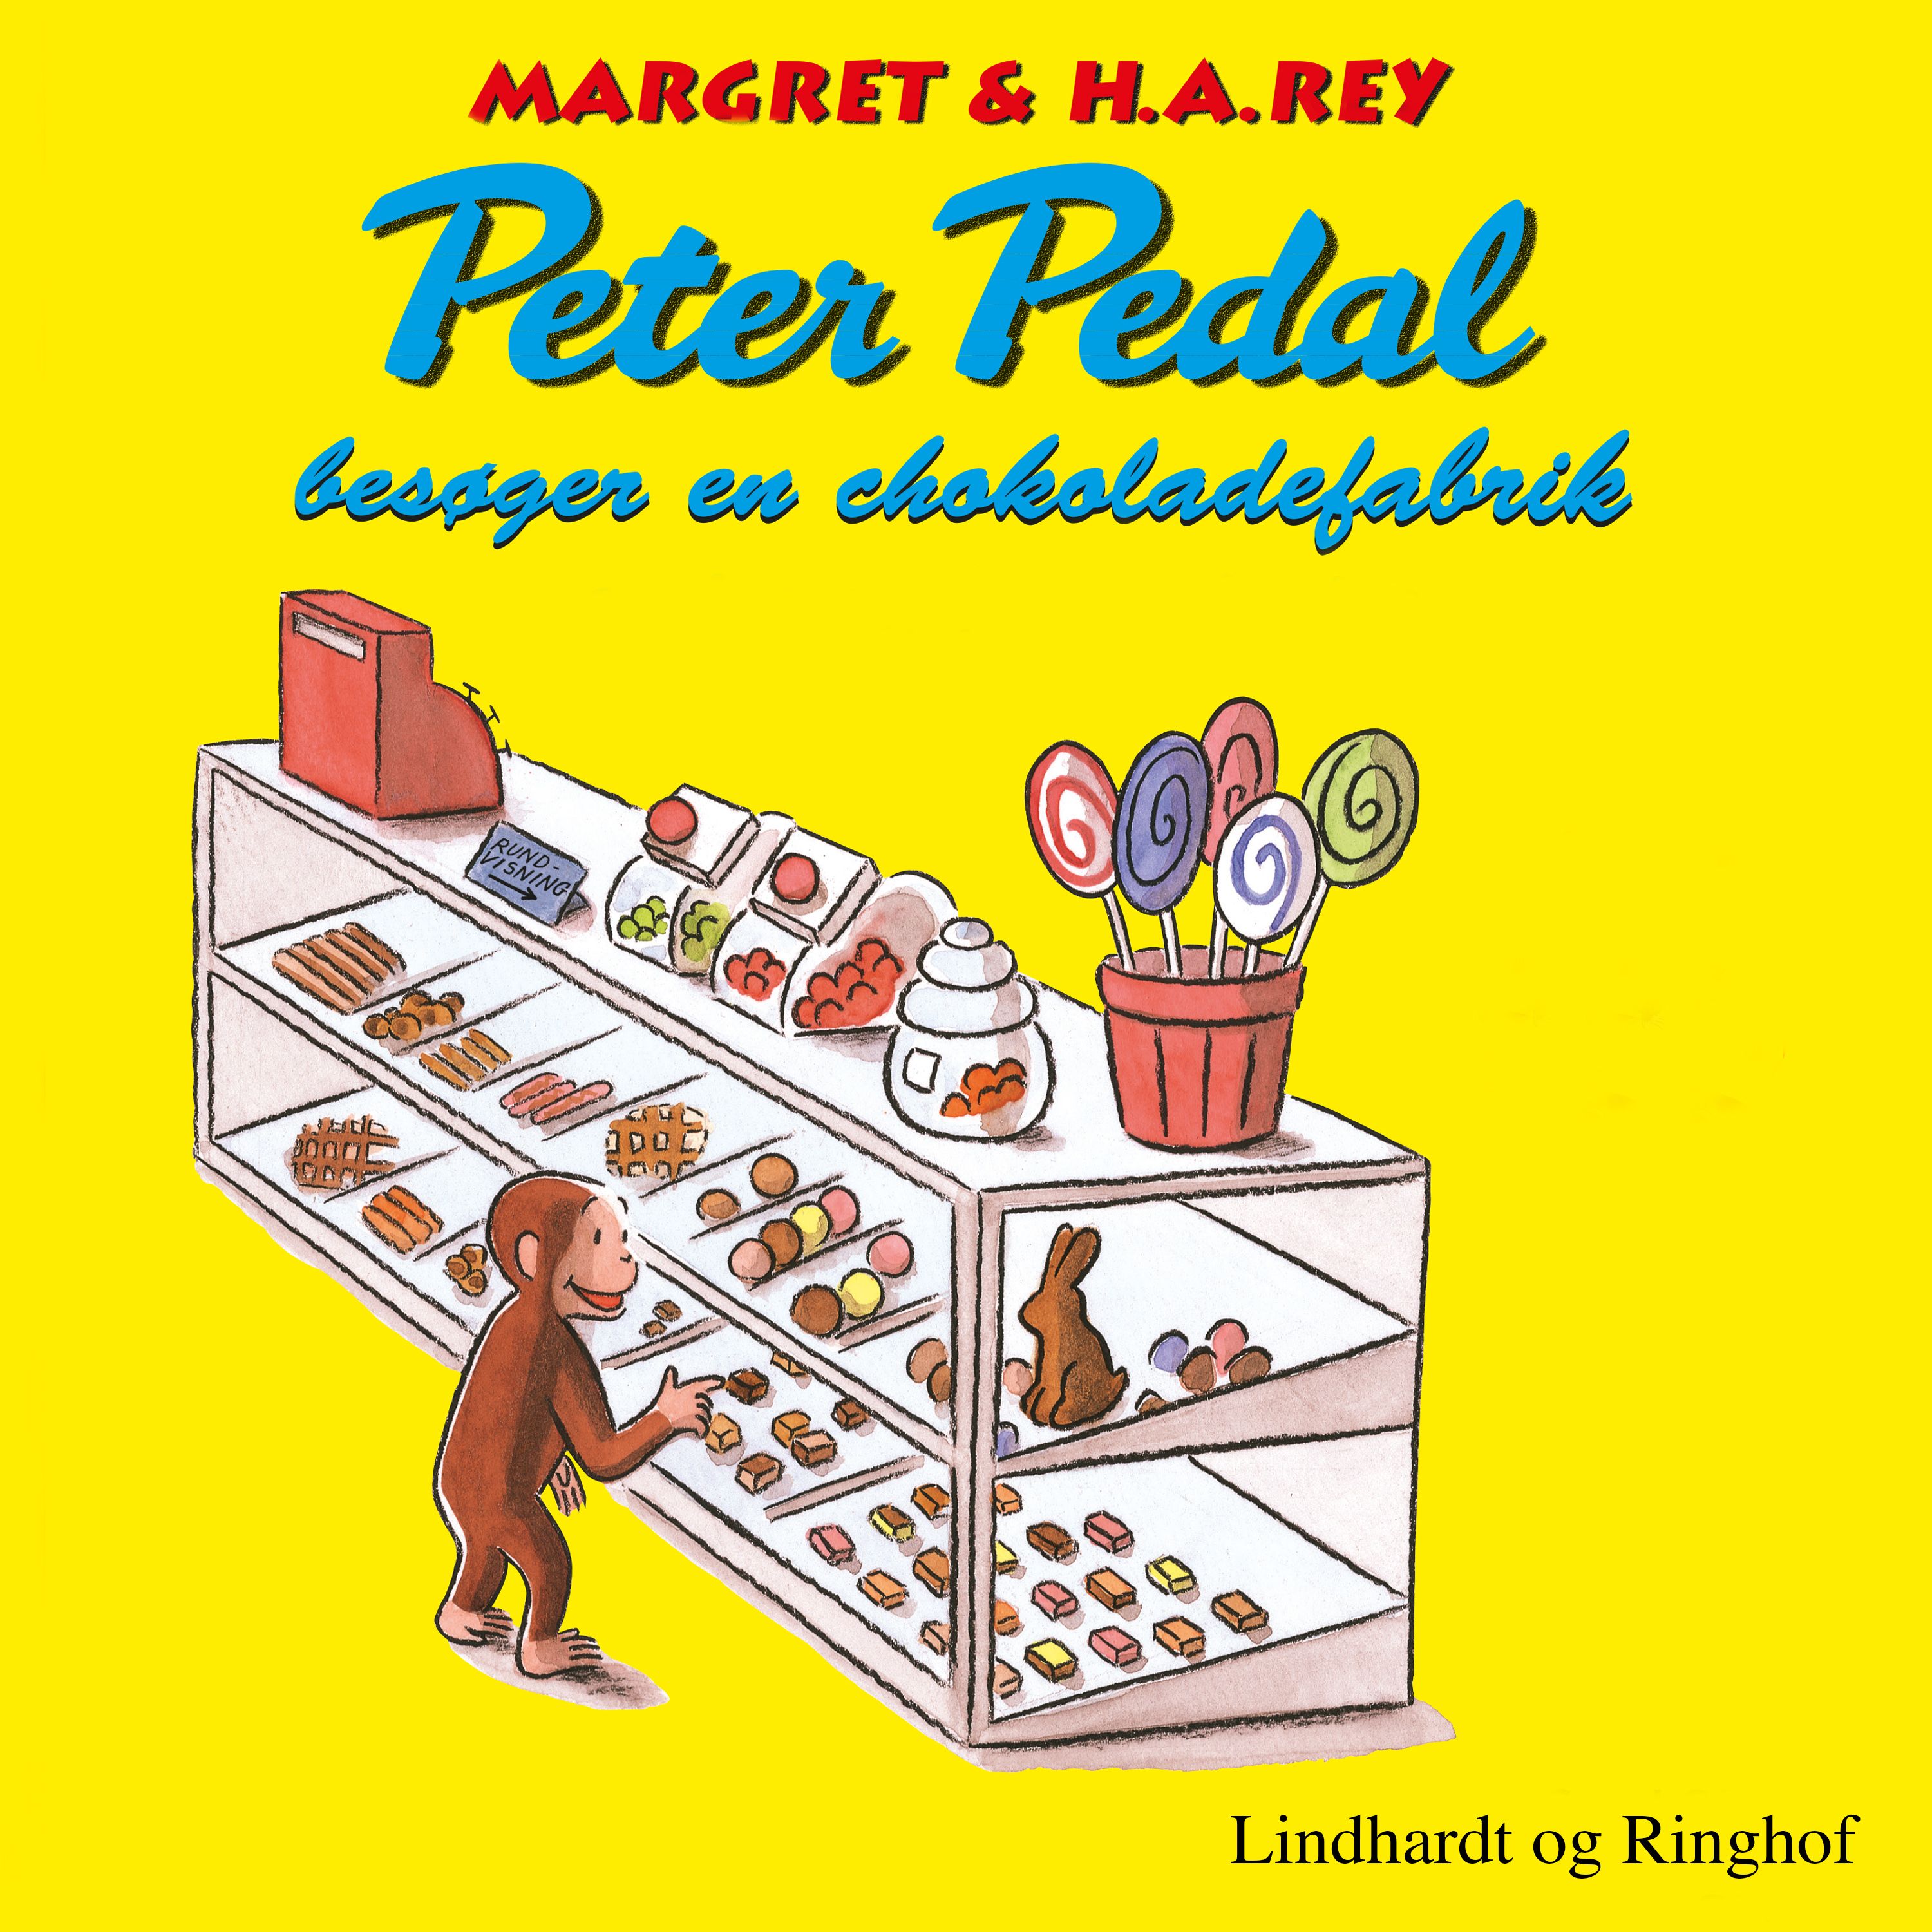 Peter Pedal besøger en chokoladefabrik, audiobook by H.a. Rey